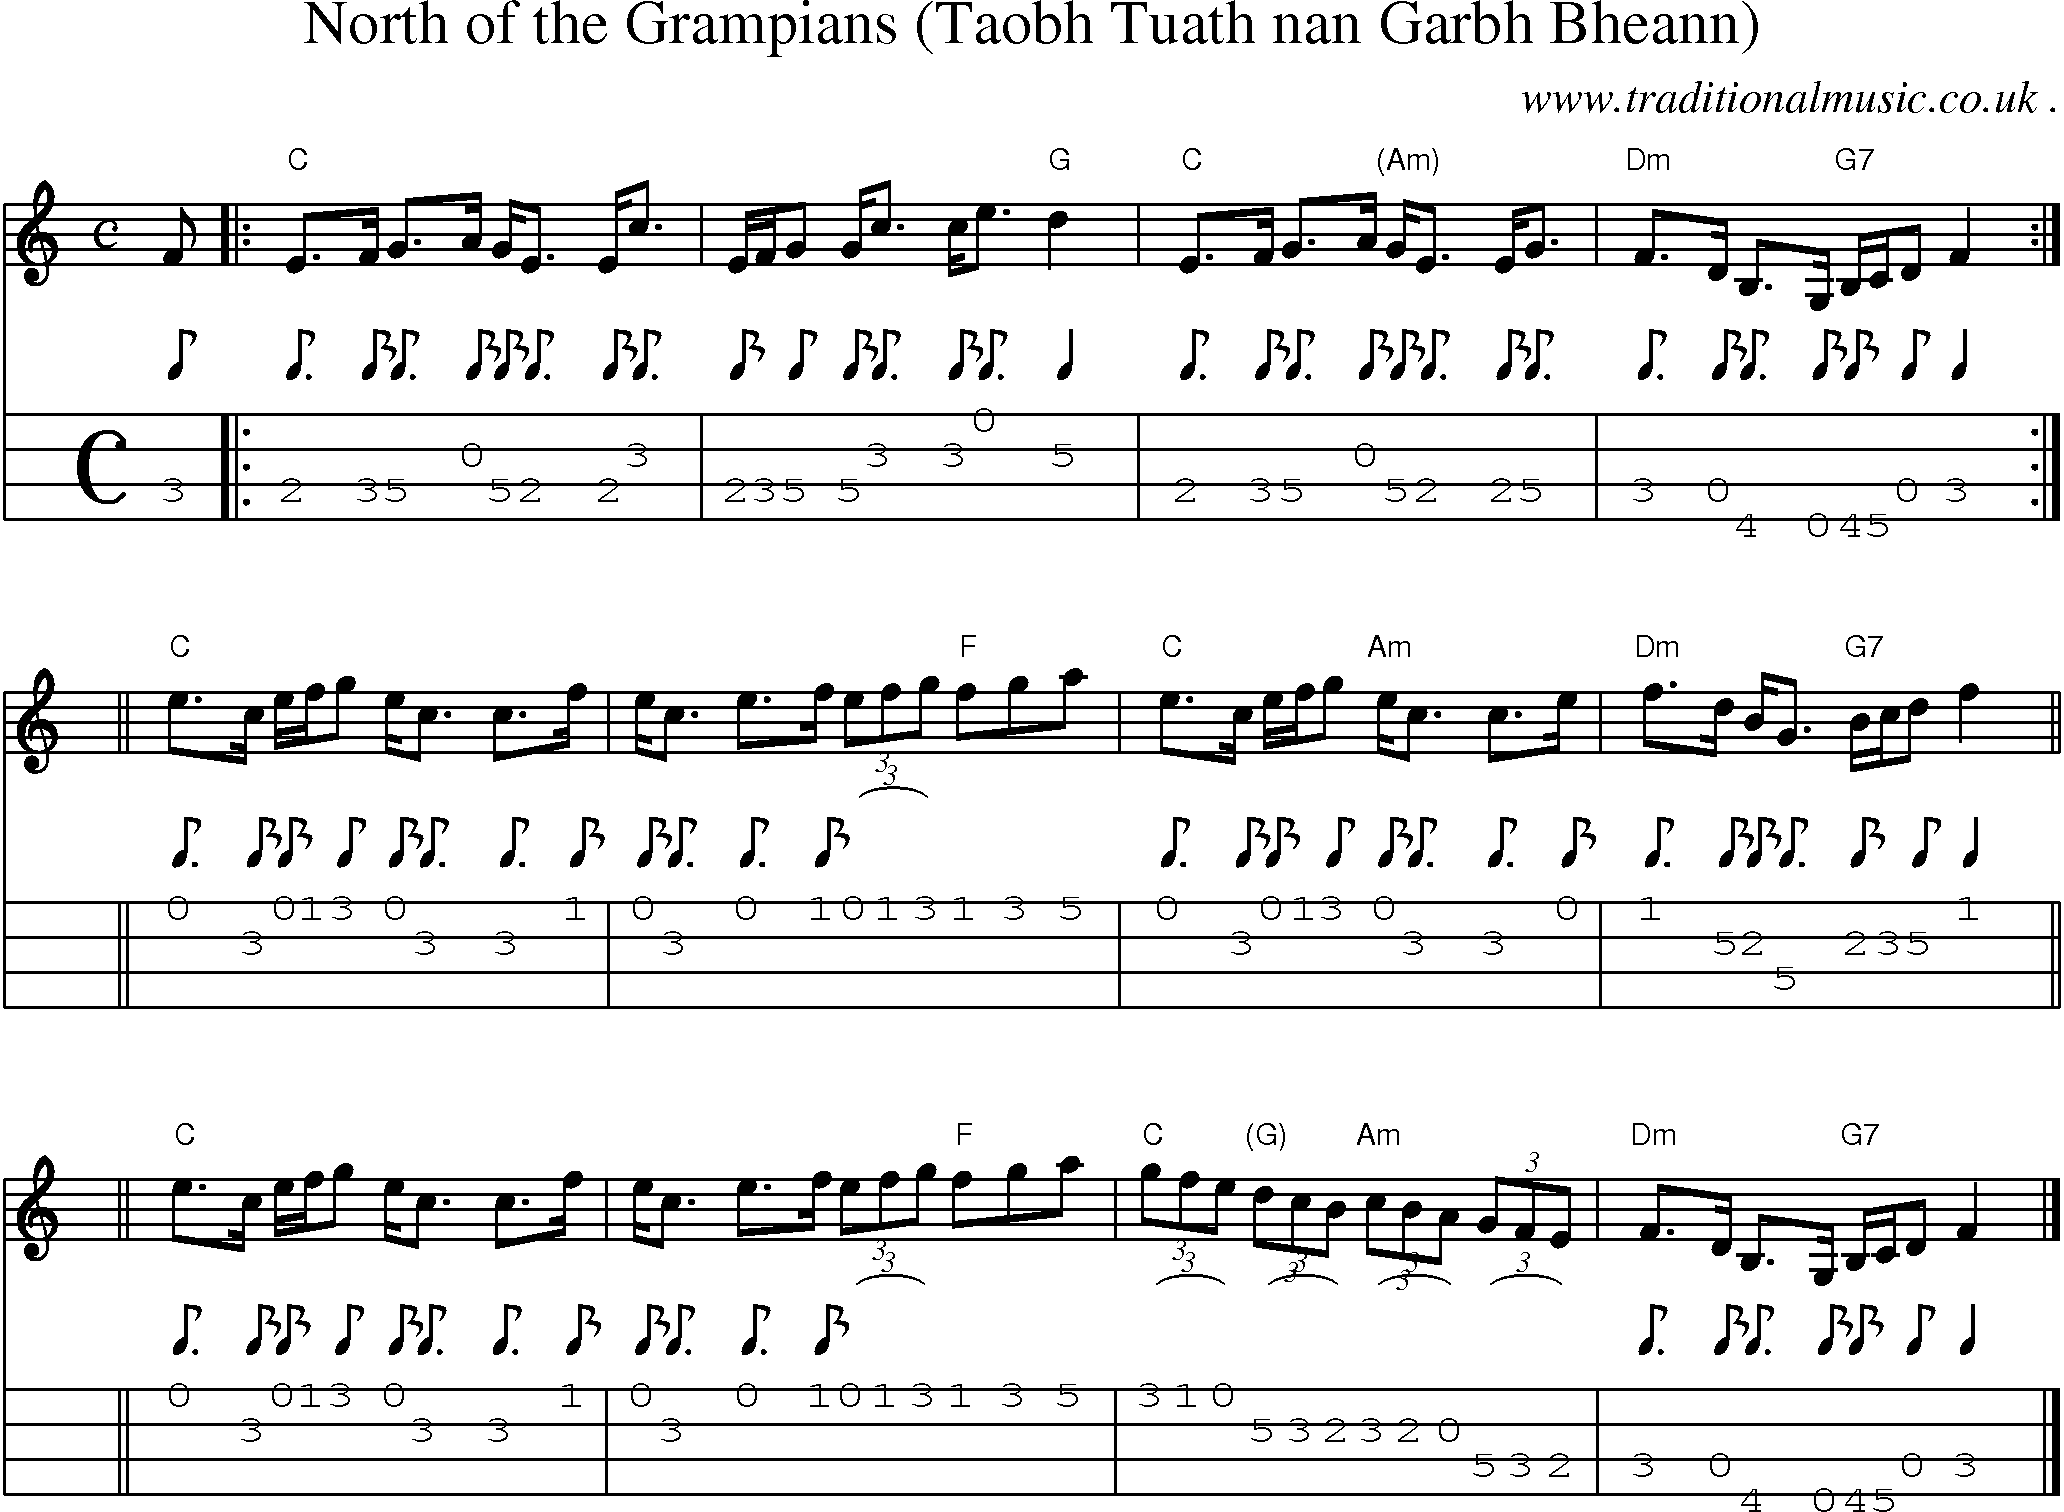 Sheet-music  score, Chords and Mandolin Tabs for North Of The Grampians Taobh Tuath Nan Garbh Bheann